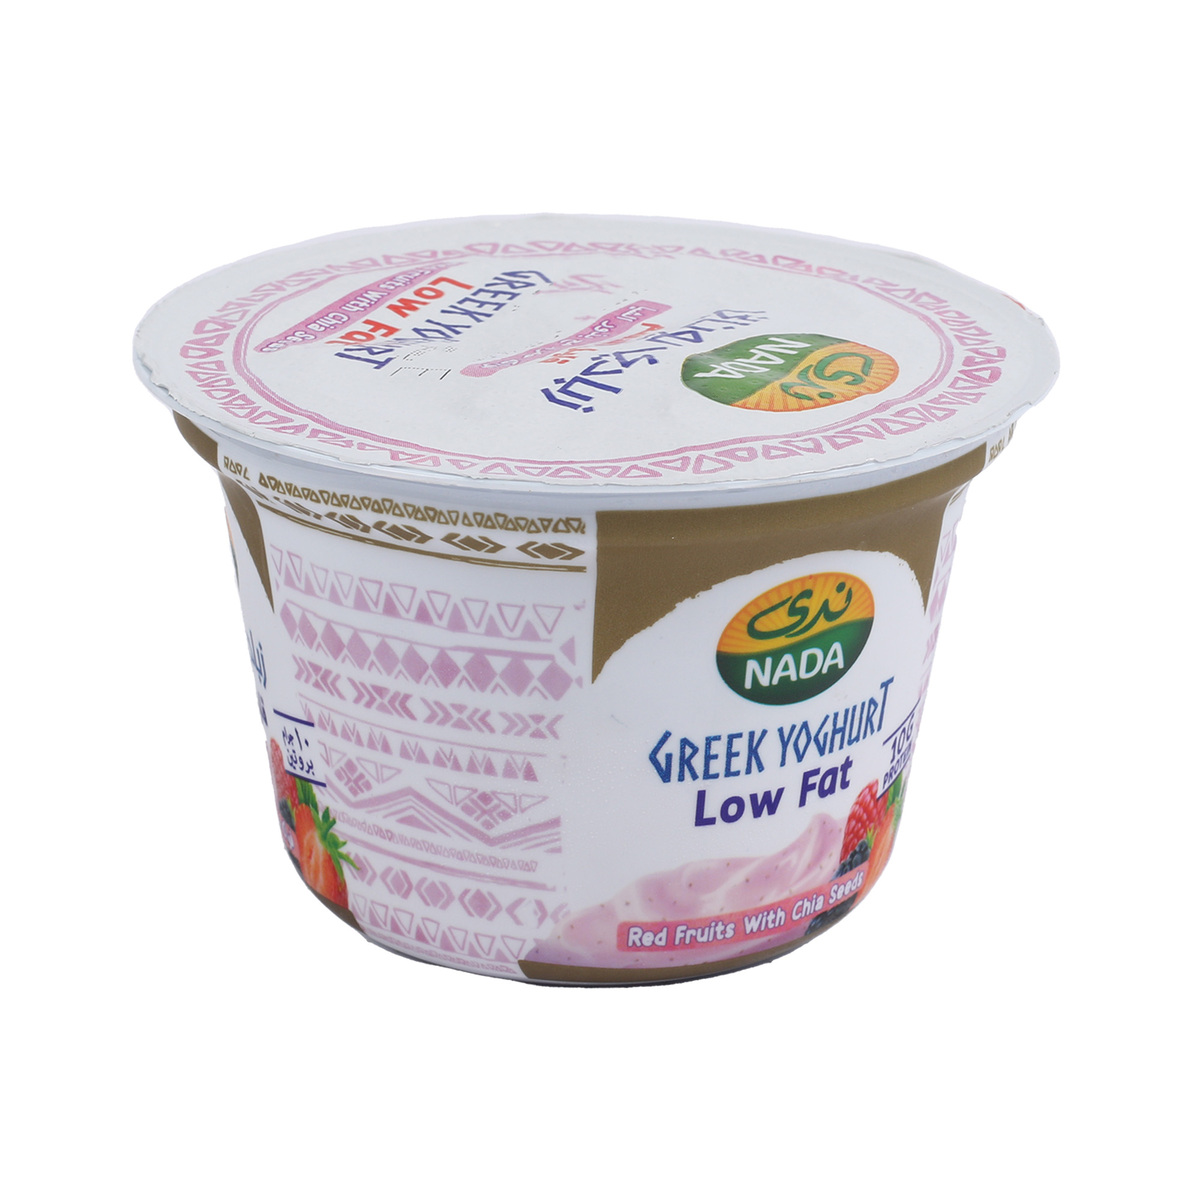 اشتري قم بشراء ندى الزبادي اليوناني مع مزيج حبوب 160 جم Online at Best Price من الموقع - من لولو هايبر ماركت Flavoured Yoghurt في السعودية